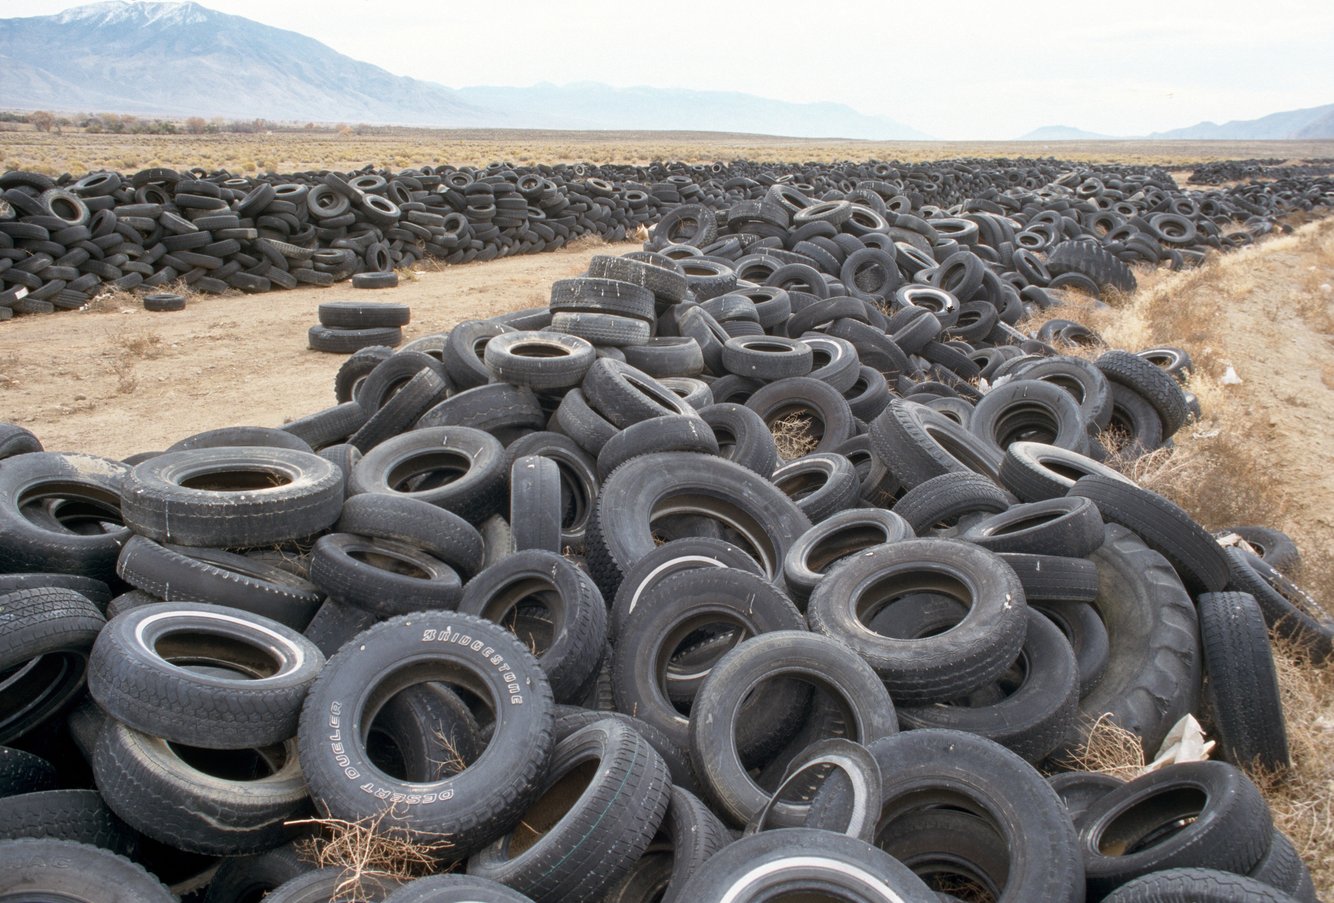 Hàng dài lốp xe cũ chất đống trong một bãi rác hoang vắng ở Nevada. Trước đây mảnh đất này được dùng làm khu vực vui chơi, cho đến năm 2006 nó trở thành nơi tập kết những đồ dùng con người không cần đến nữa.